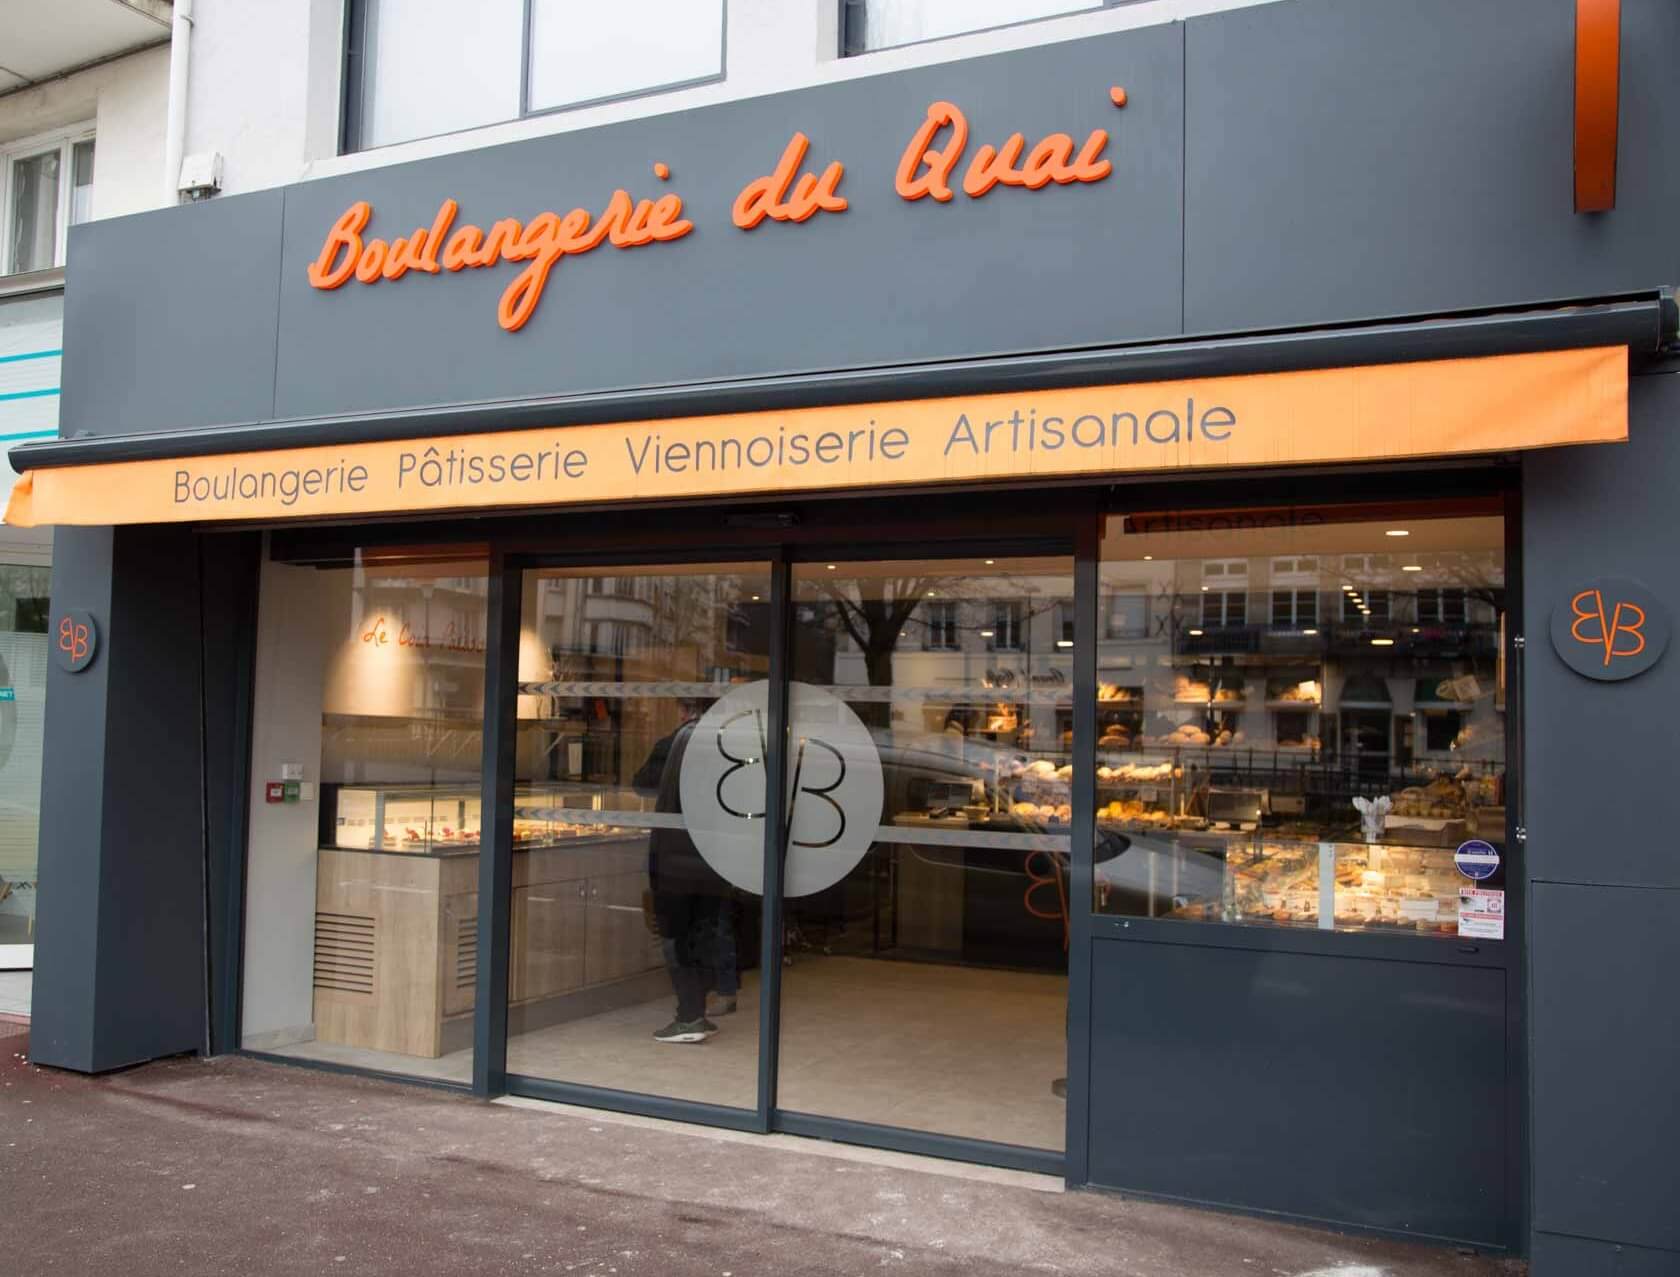 Boulangerie du Quai